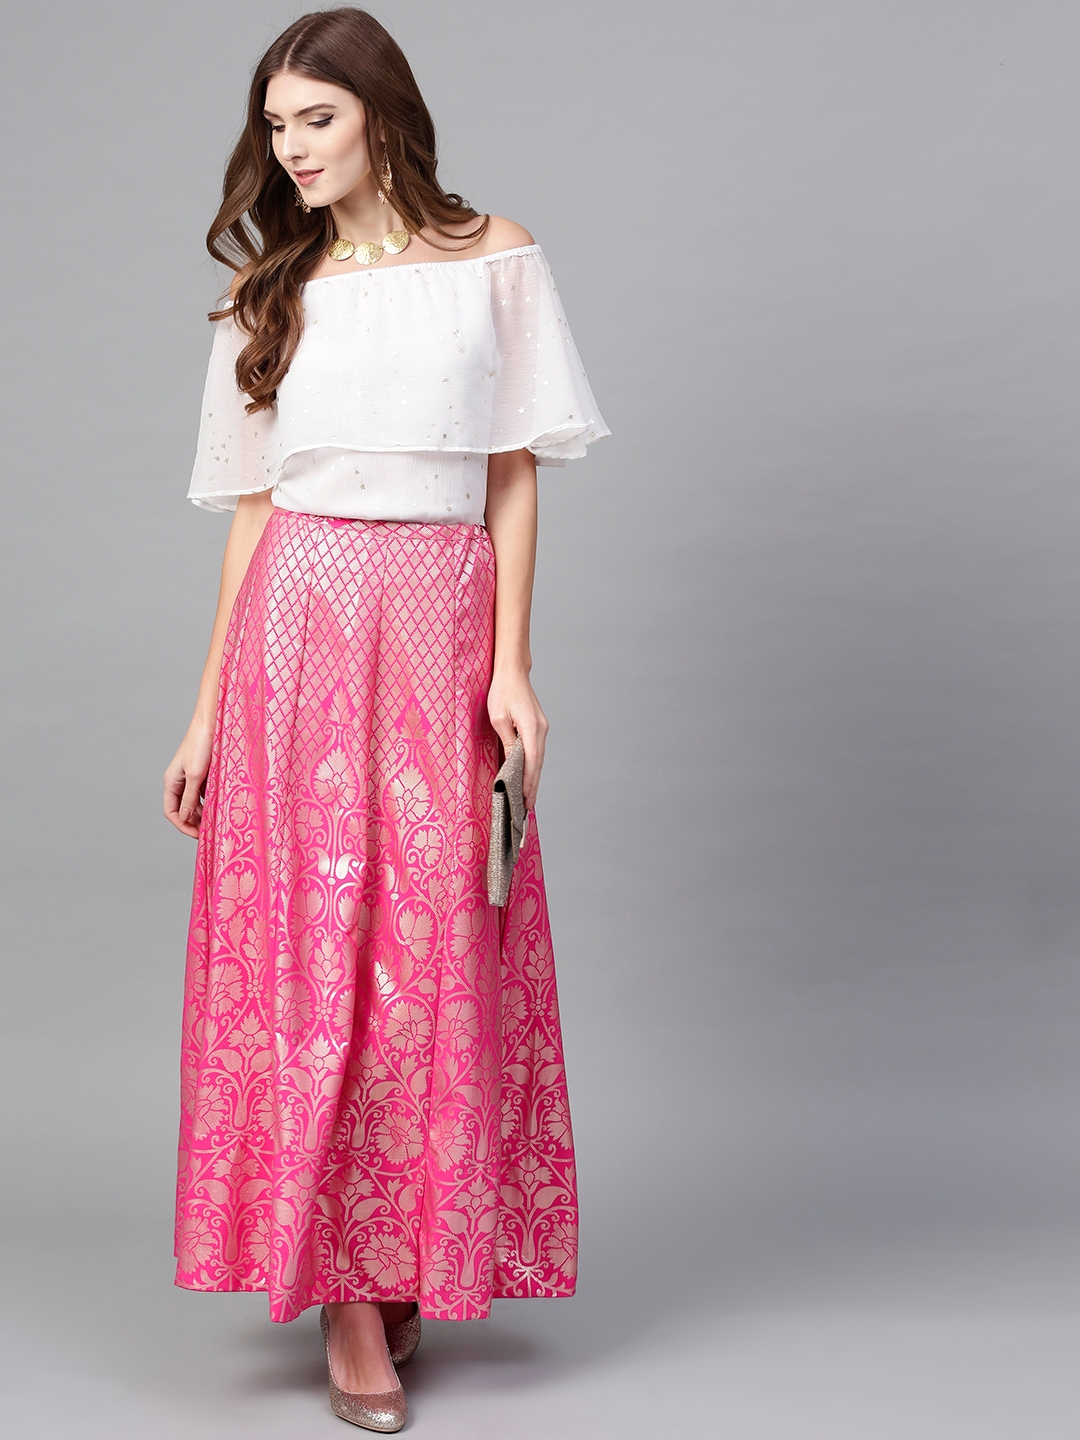 Akkriti By Pantaloons Cotton Skirts  Buy Akkriti By Pantaloons Cotton  Skirts online in India